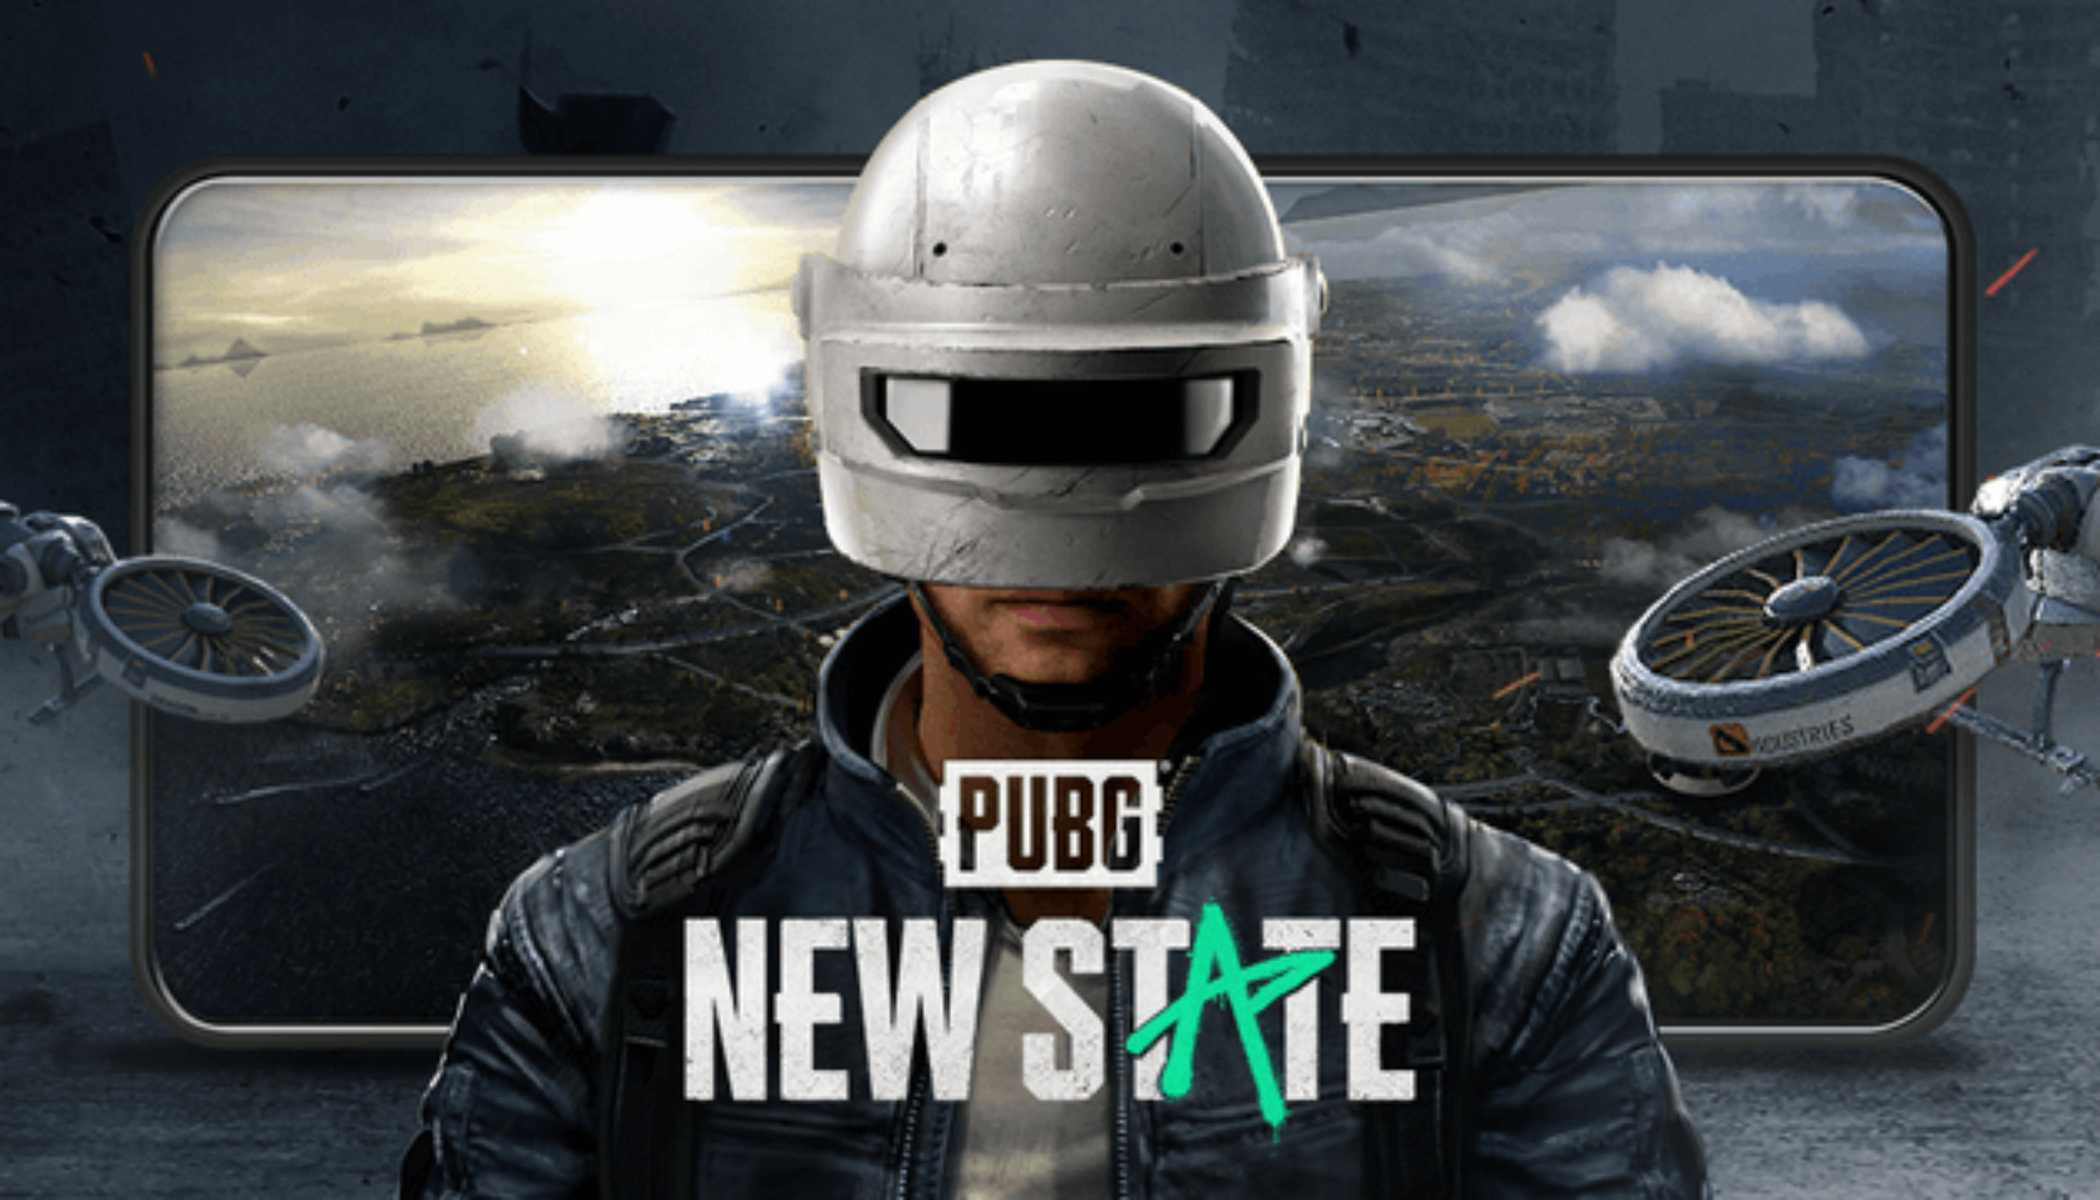 PUBG  Epic Games Store Launch Trailer 